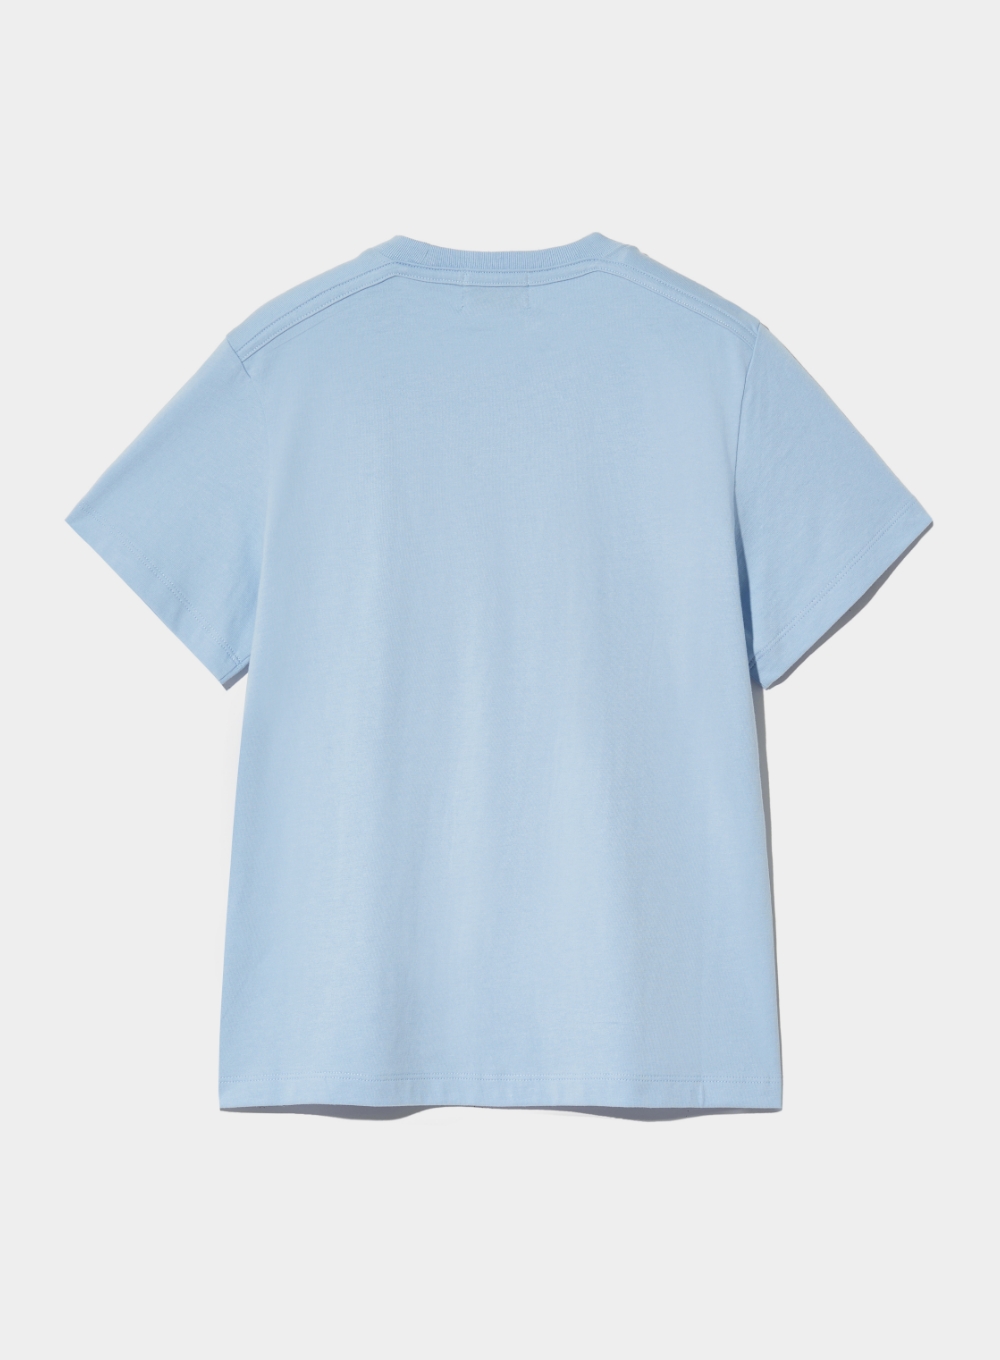 [6월 19일 예약배송] (W) Classy Nostalgia Vintage Graphic T-Shirt - Sky Blue